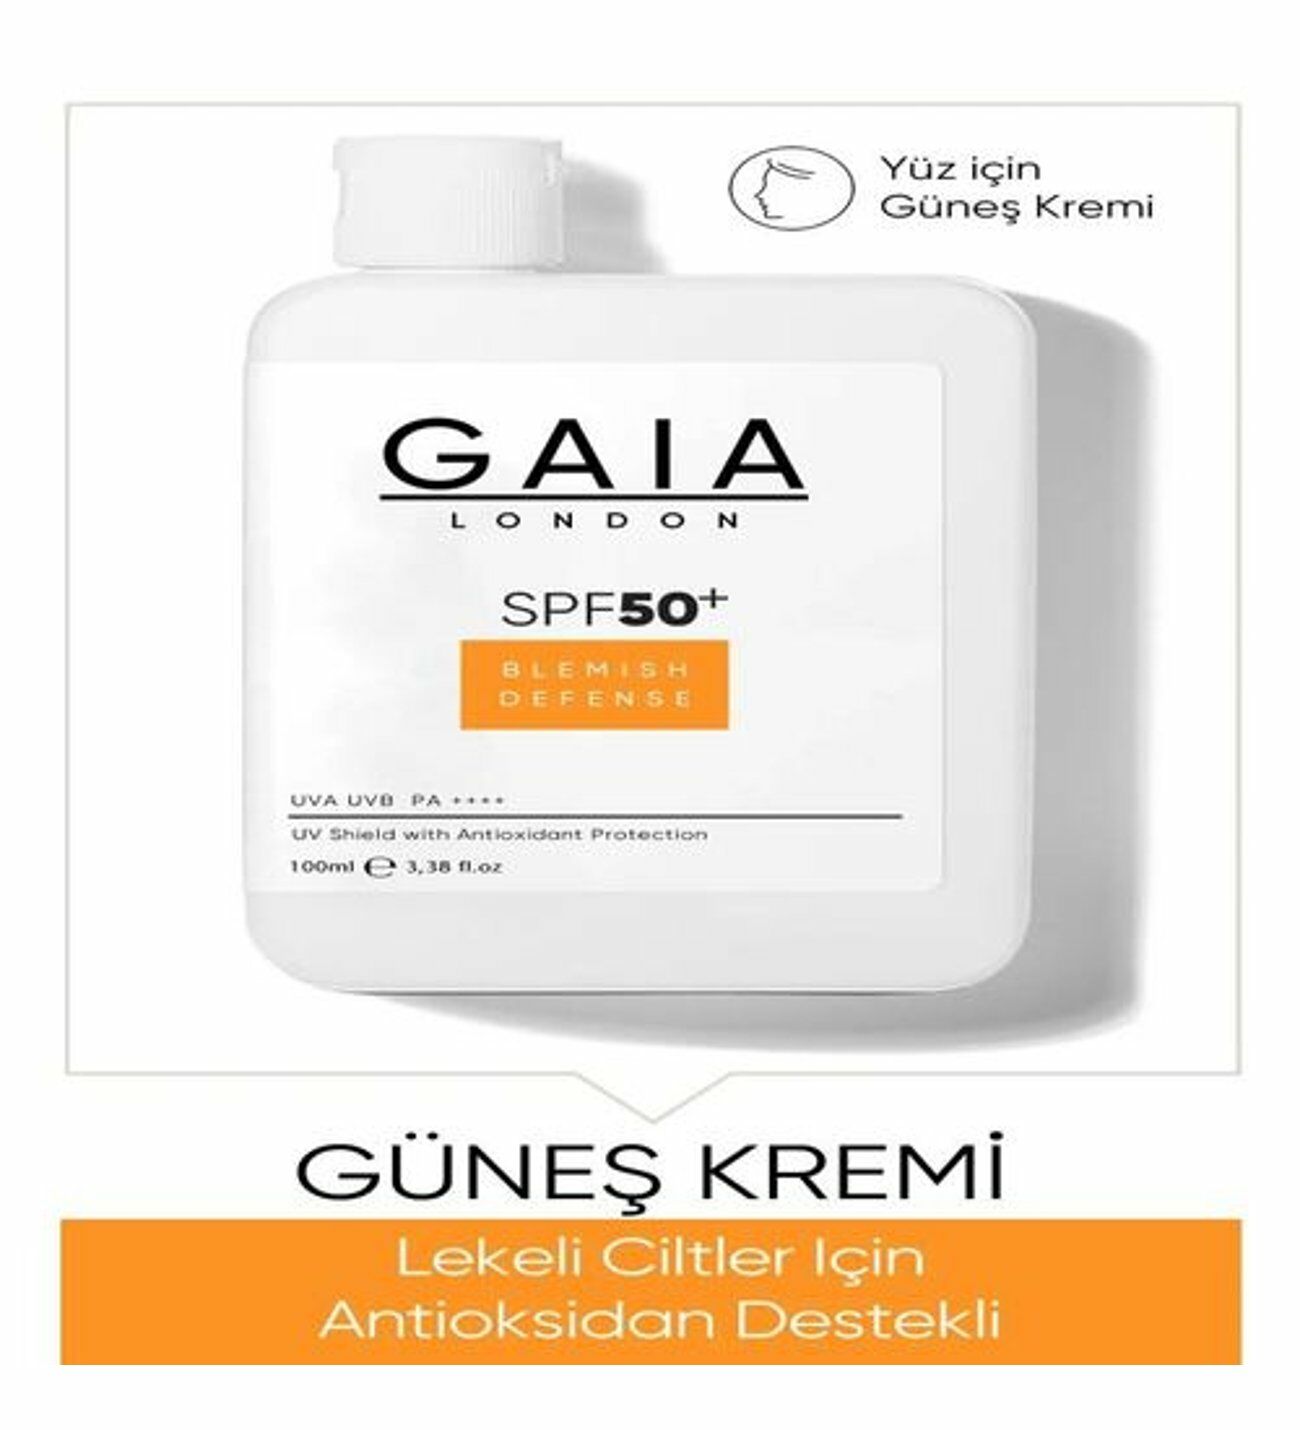 Gaia London Güneş Kremi Lekeli Ciltler Için Antioksidan Destekli SPF50 100 ml